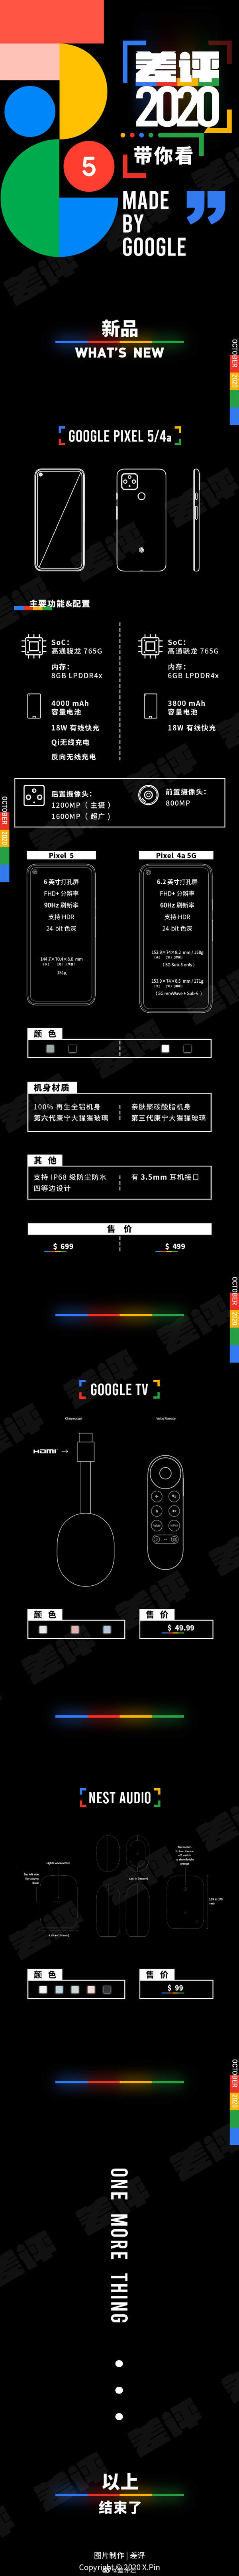 谷歌Pixel 5正式发布,一张图带你了解谷歌新品发布会